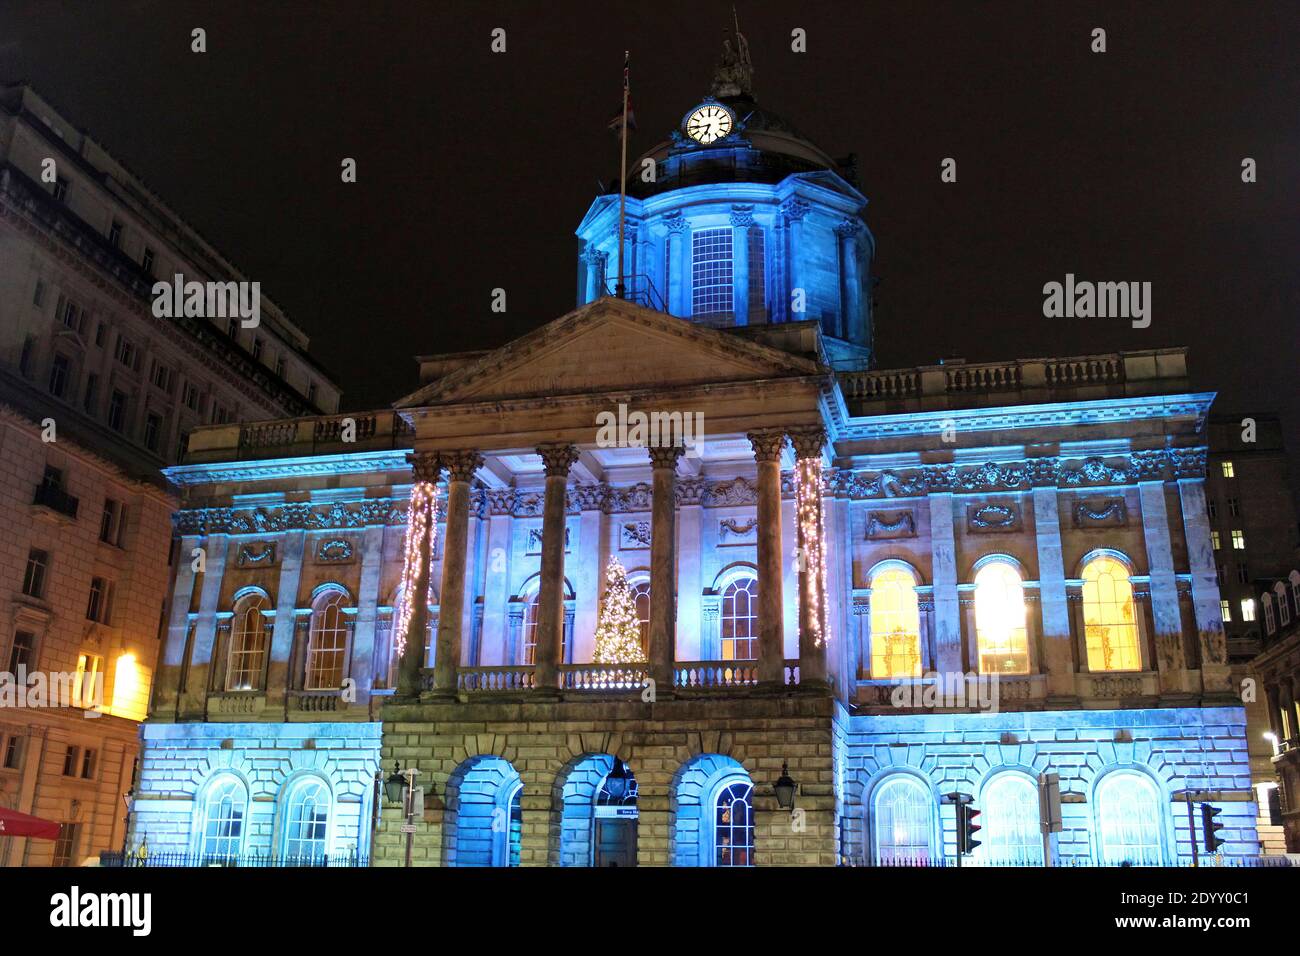 L'hôtel de ville de Liverpool est illuminé la nuit Banque D'Images